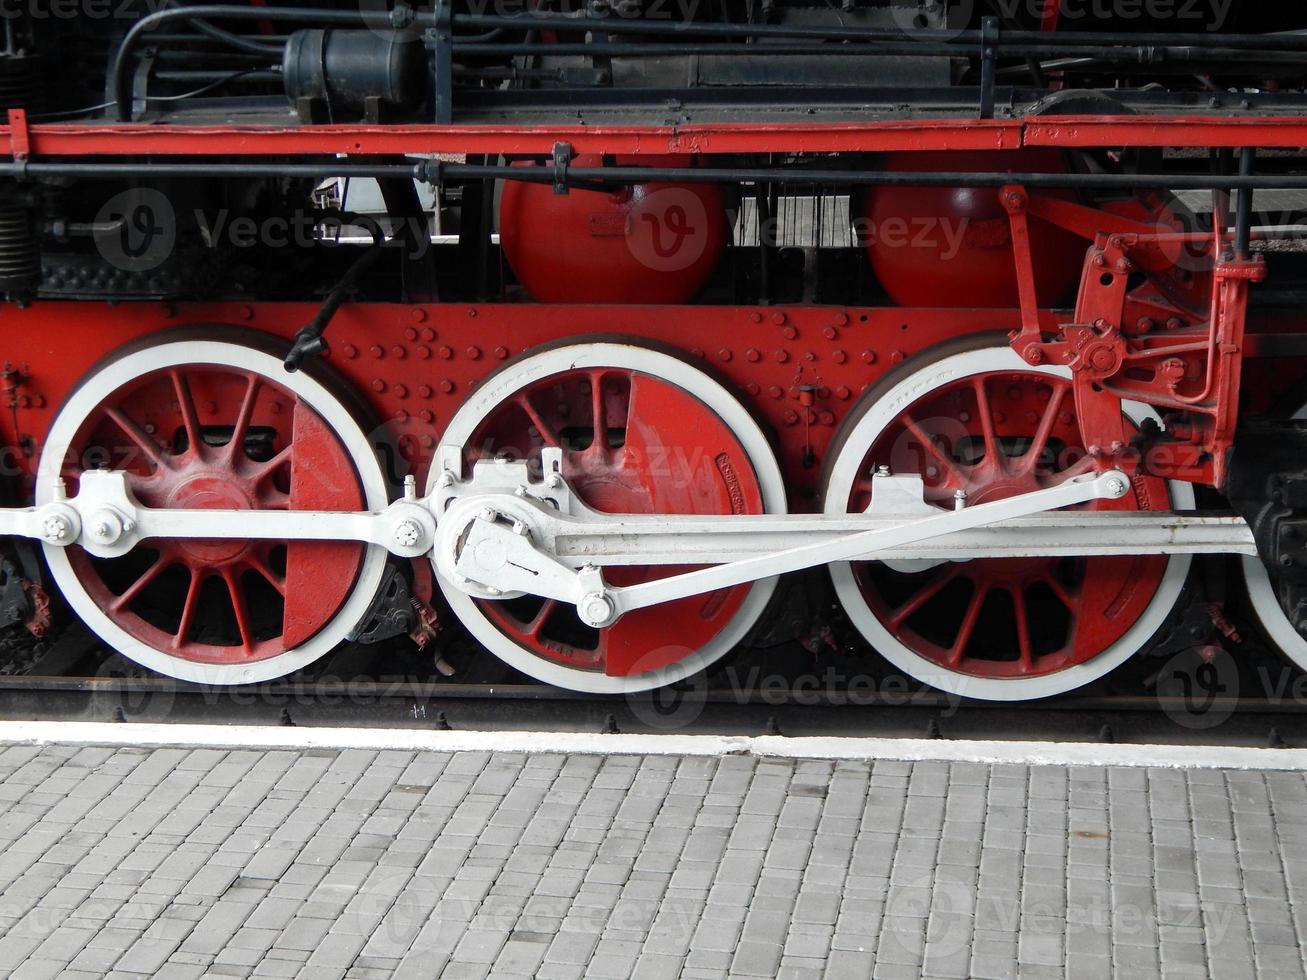 dettagli del trasporto ferroviario di locomotiva, vagone foto